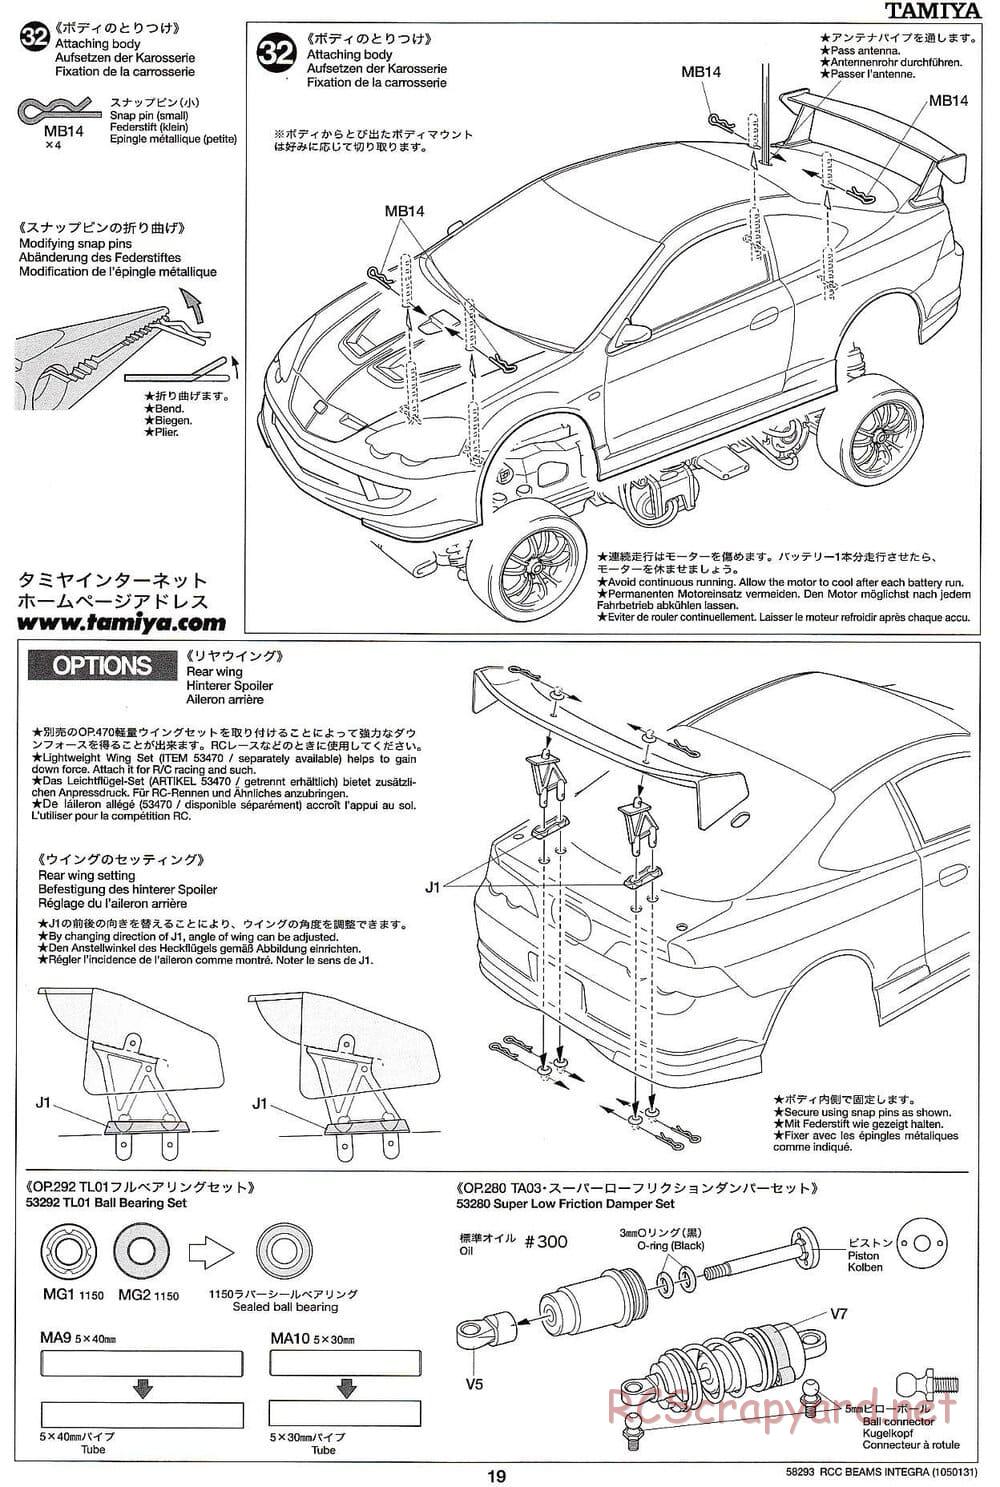 Tamiya - Beams Integra - TL-01 LA Chassis - Manual - Page 19